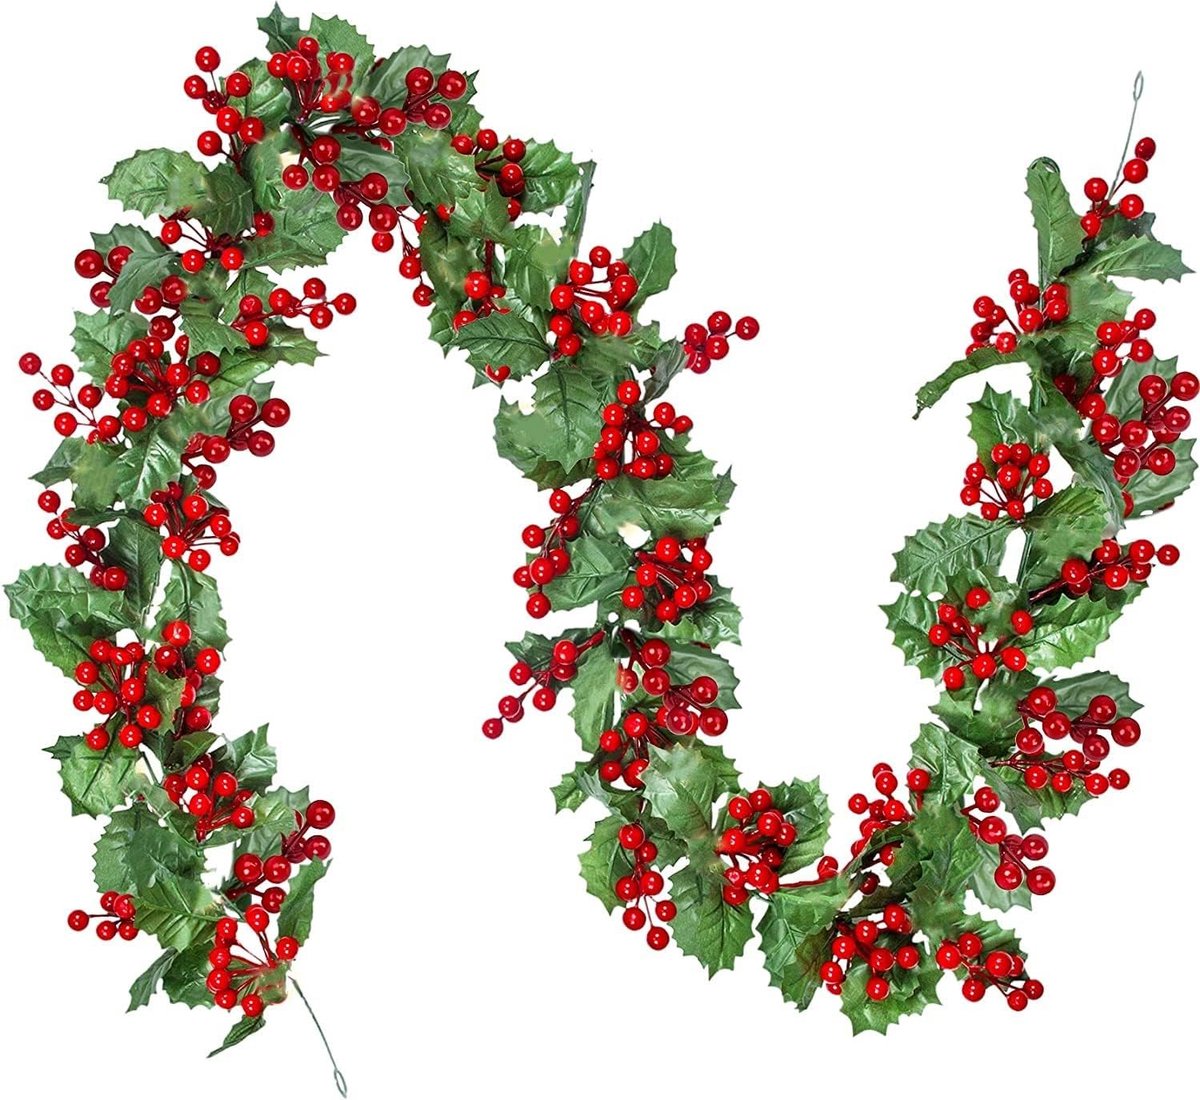 Rode Berry Kerst Slinger - 175 cm - Kunstmatige Berry Garland Flexibele Groen Garland met Rode Bes en Hulst Bladeren voor Winter Kerstvakantie Nieuwjaar Decoratie